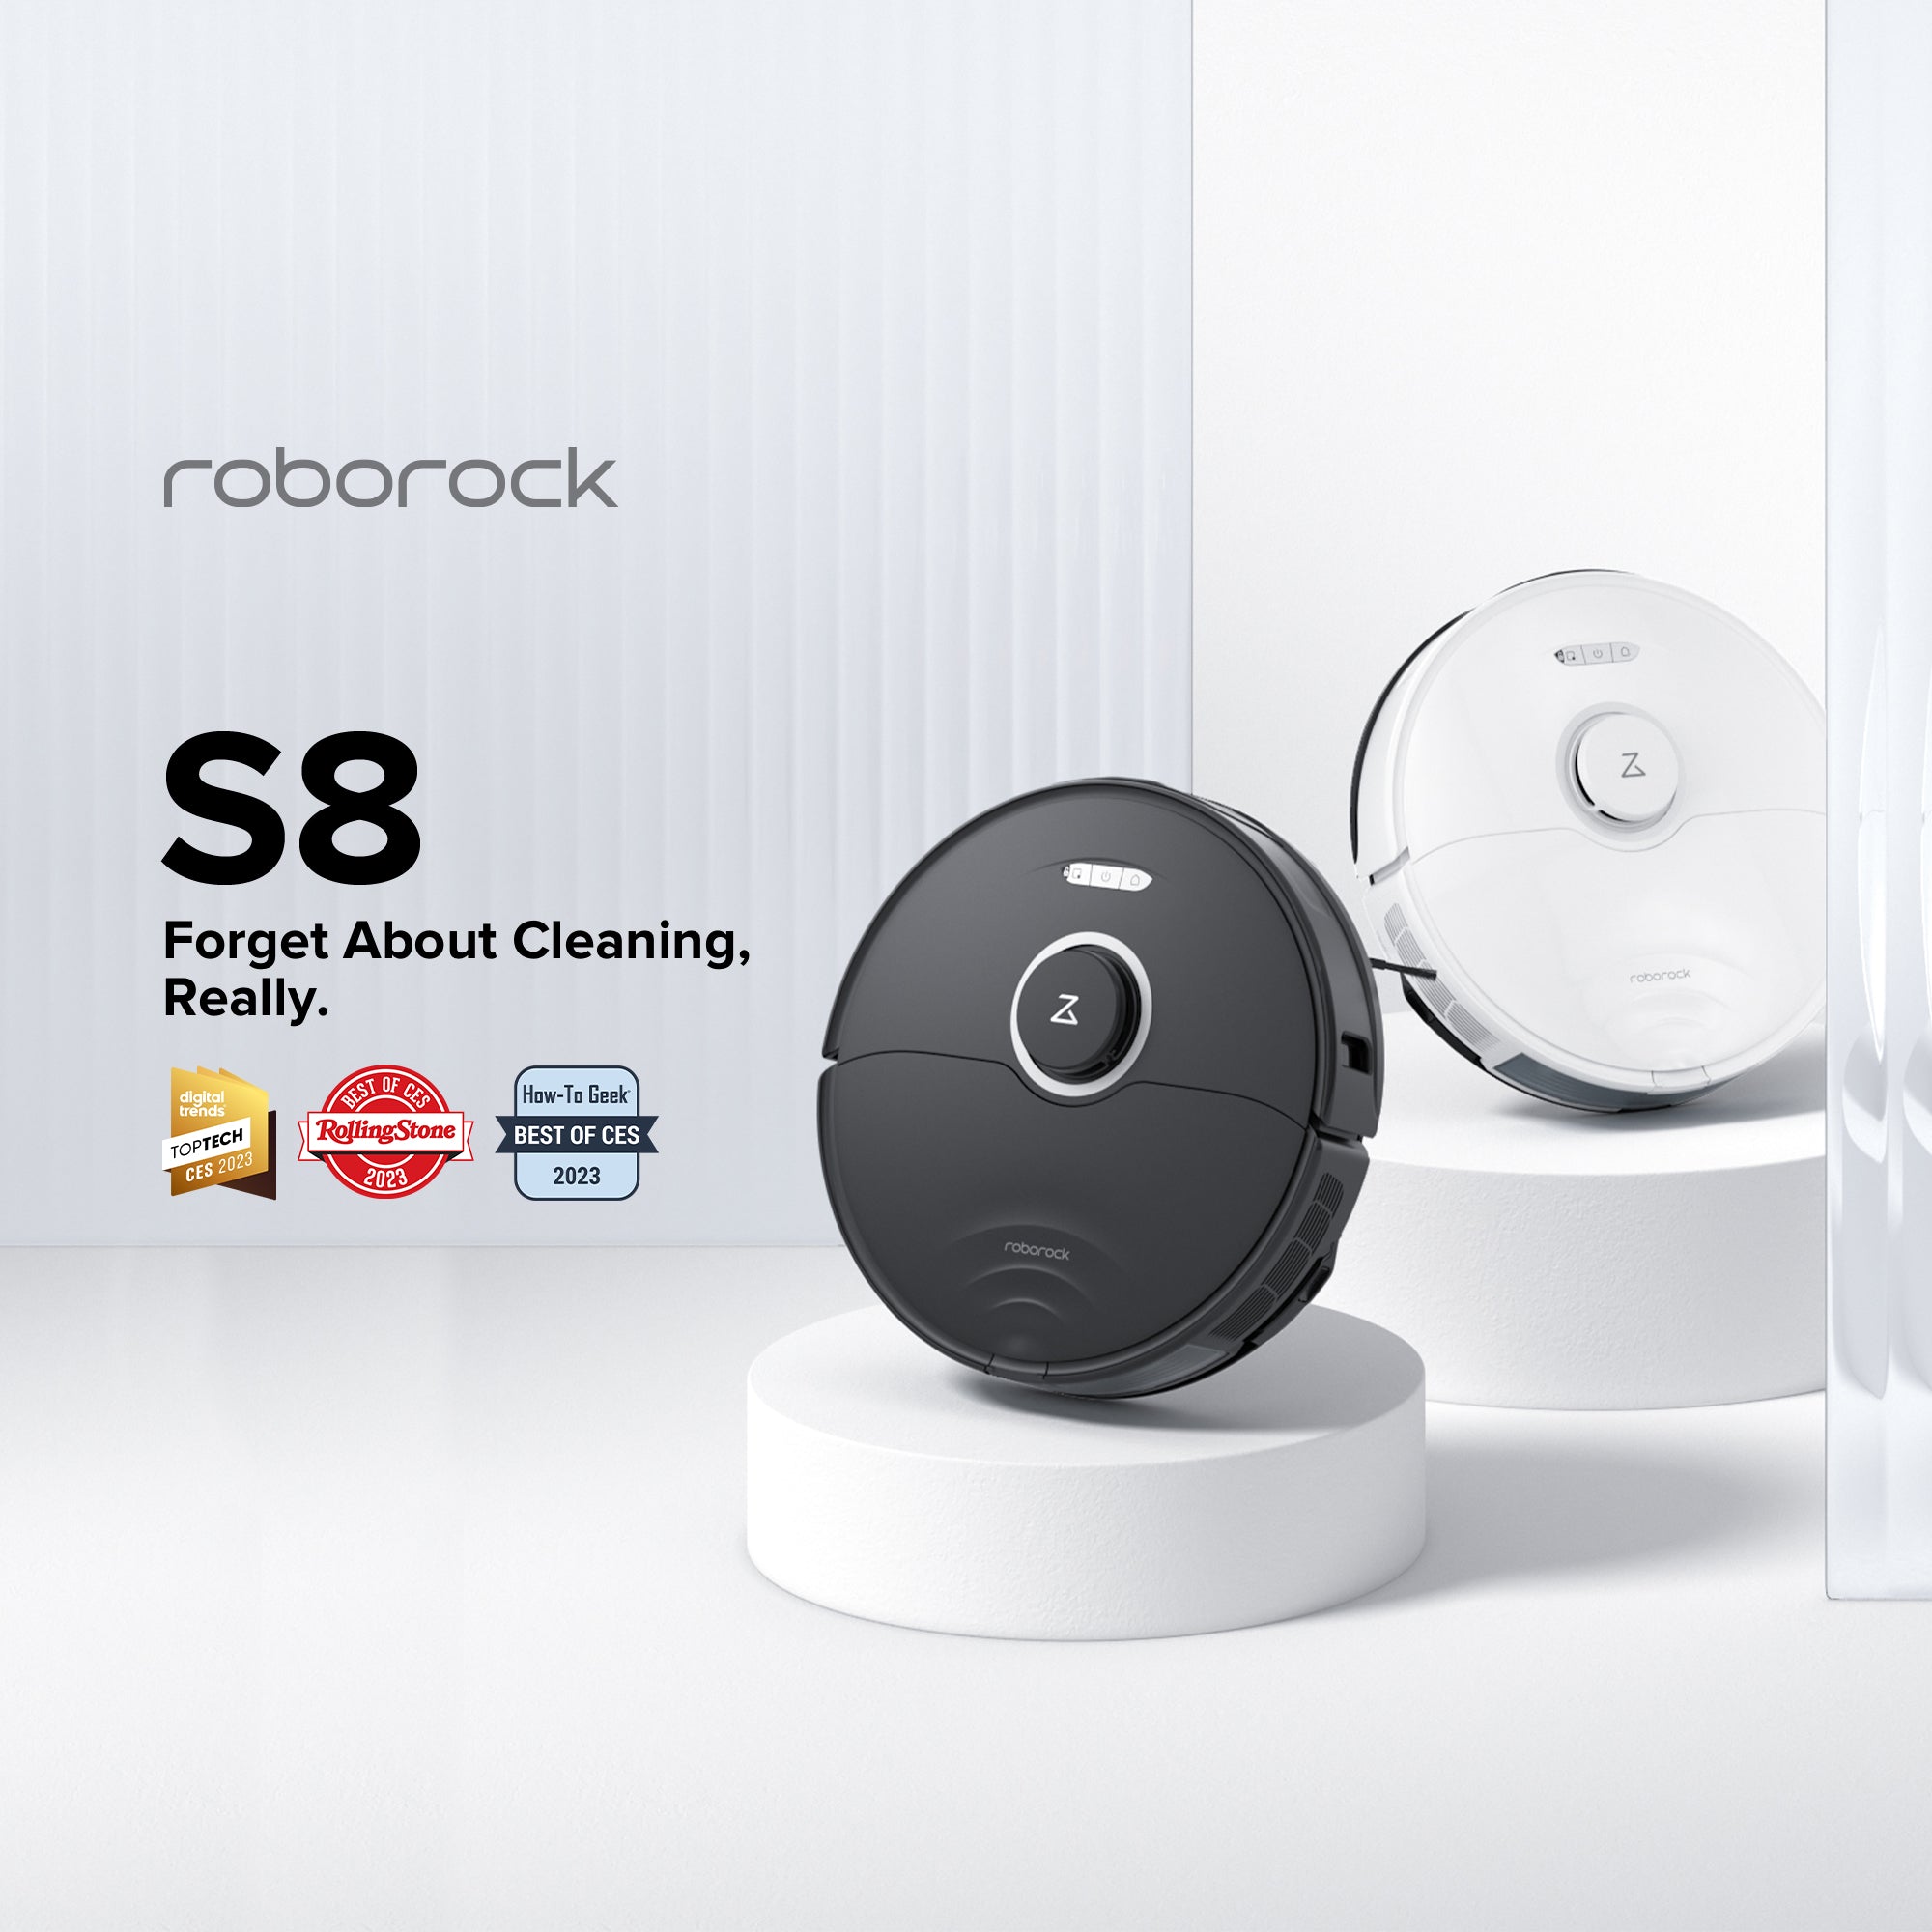 Roborock S8 cuenta con un descuento de 110 euros en su lanzamiento